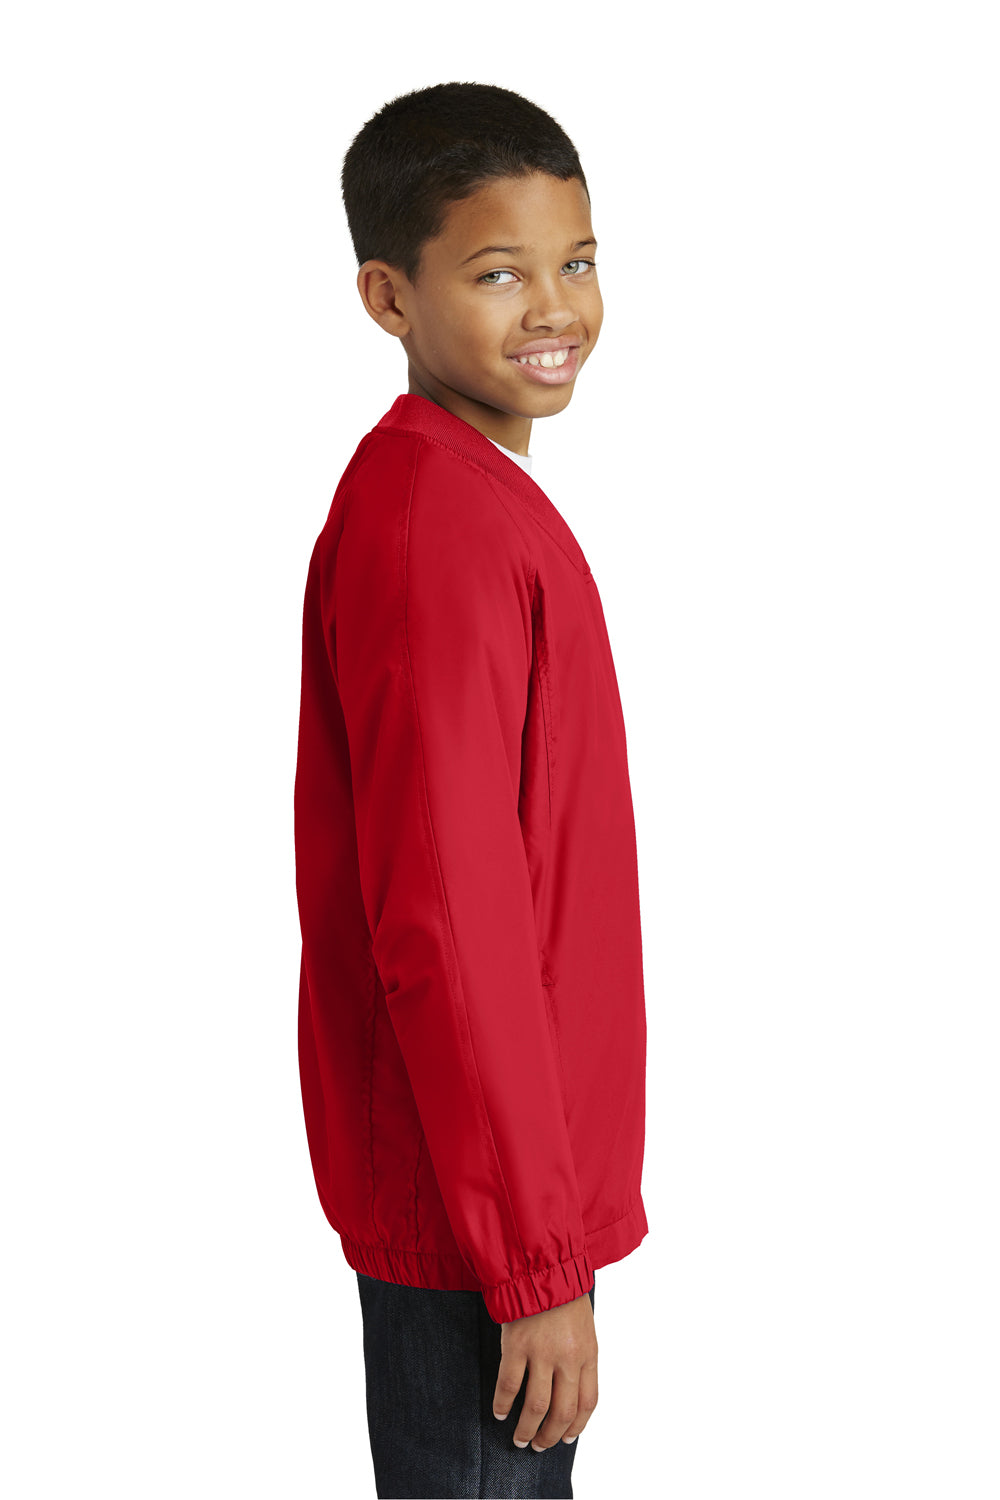 Sport-Tek YST72 Youth Water Resistant V-Neck Wind Jacket Red Side